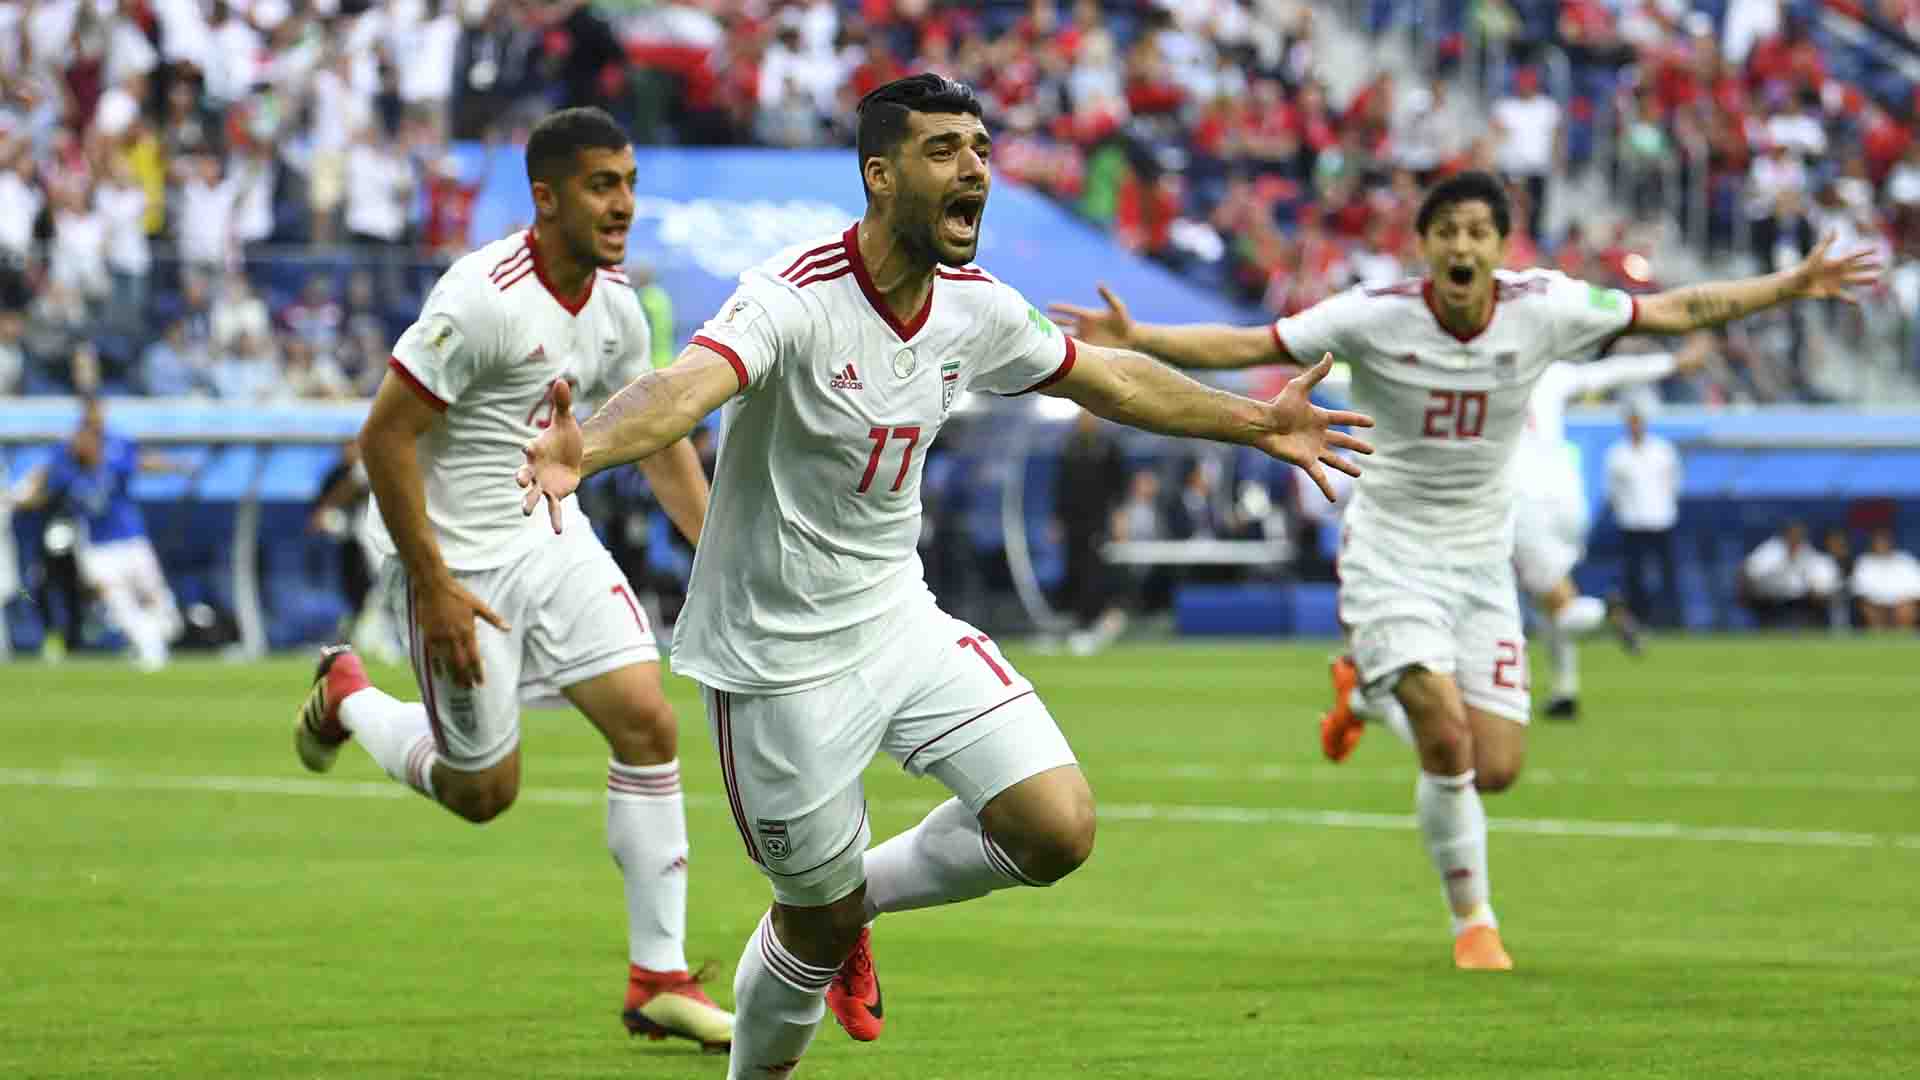 Las mujeres y hombres iraníes podrán ver por primera vez juntos un partido en un estadio